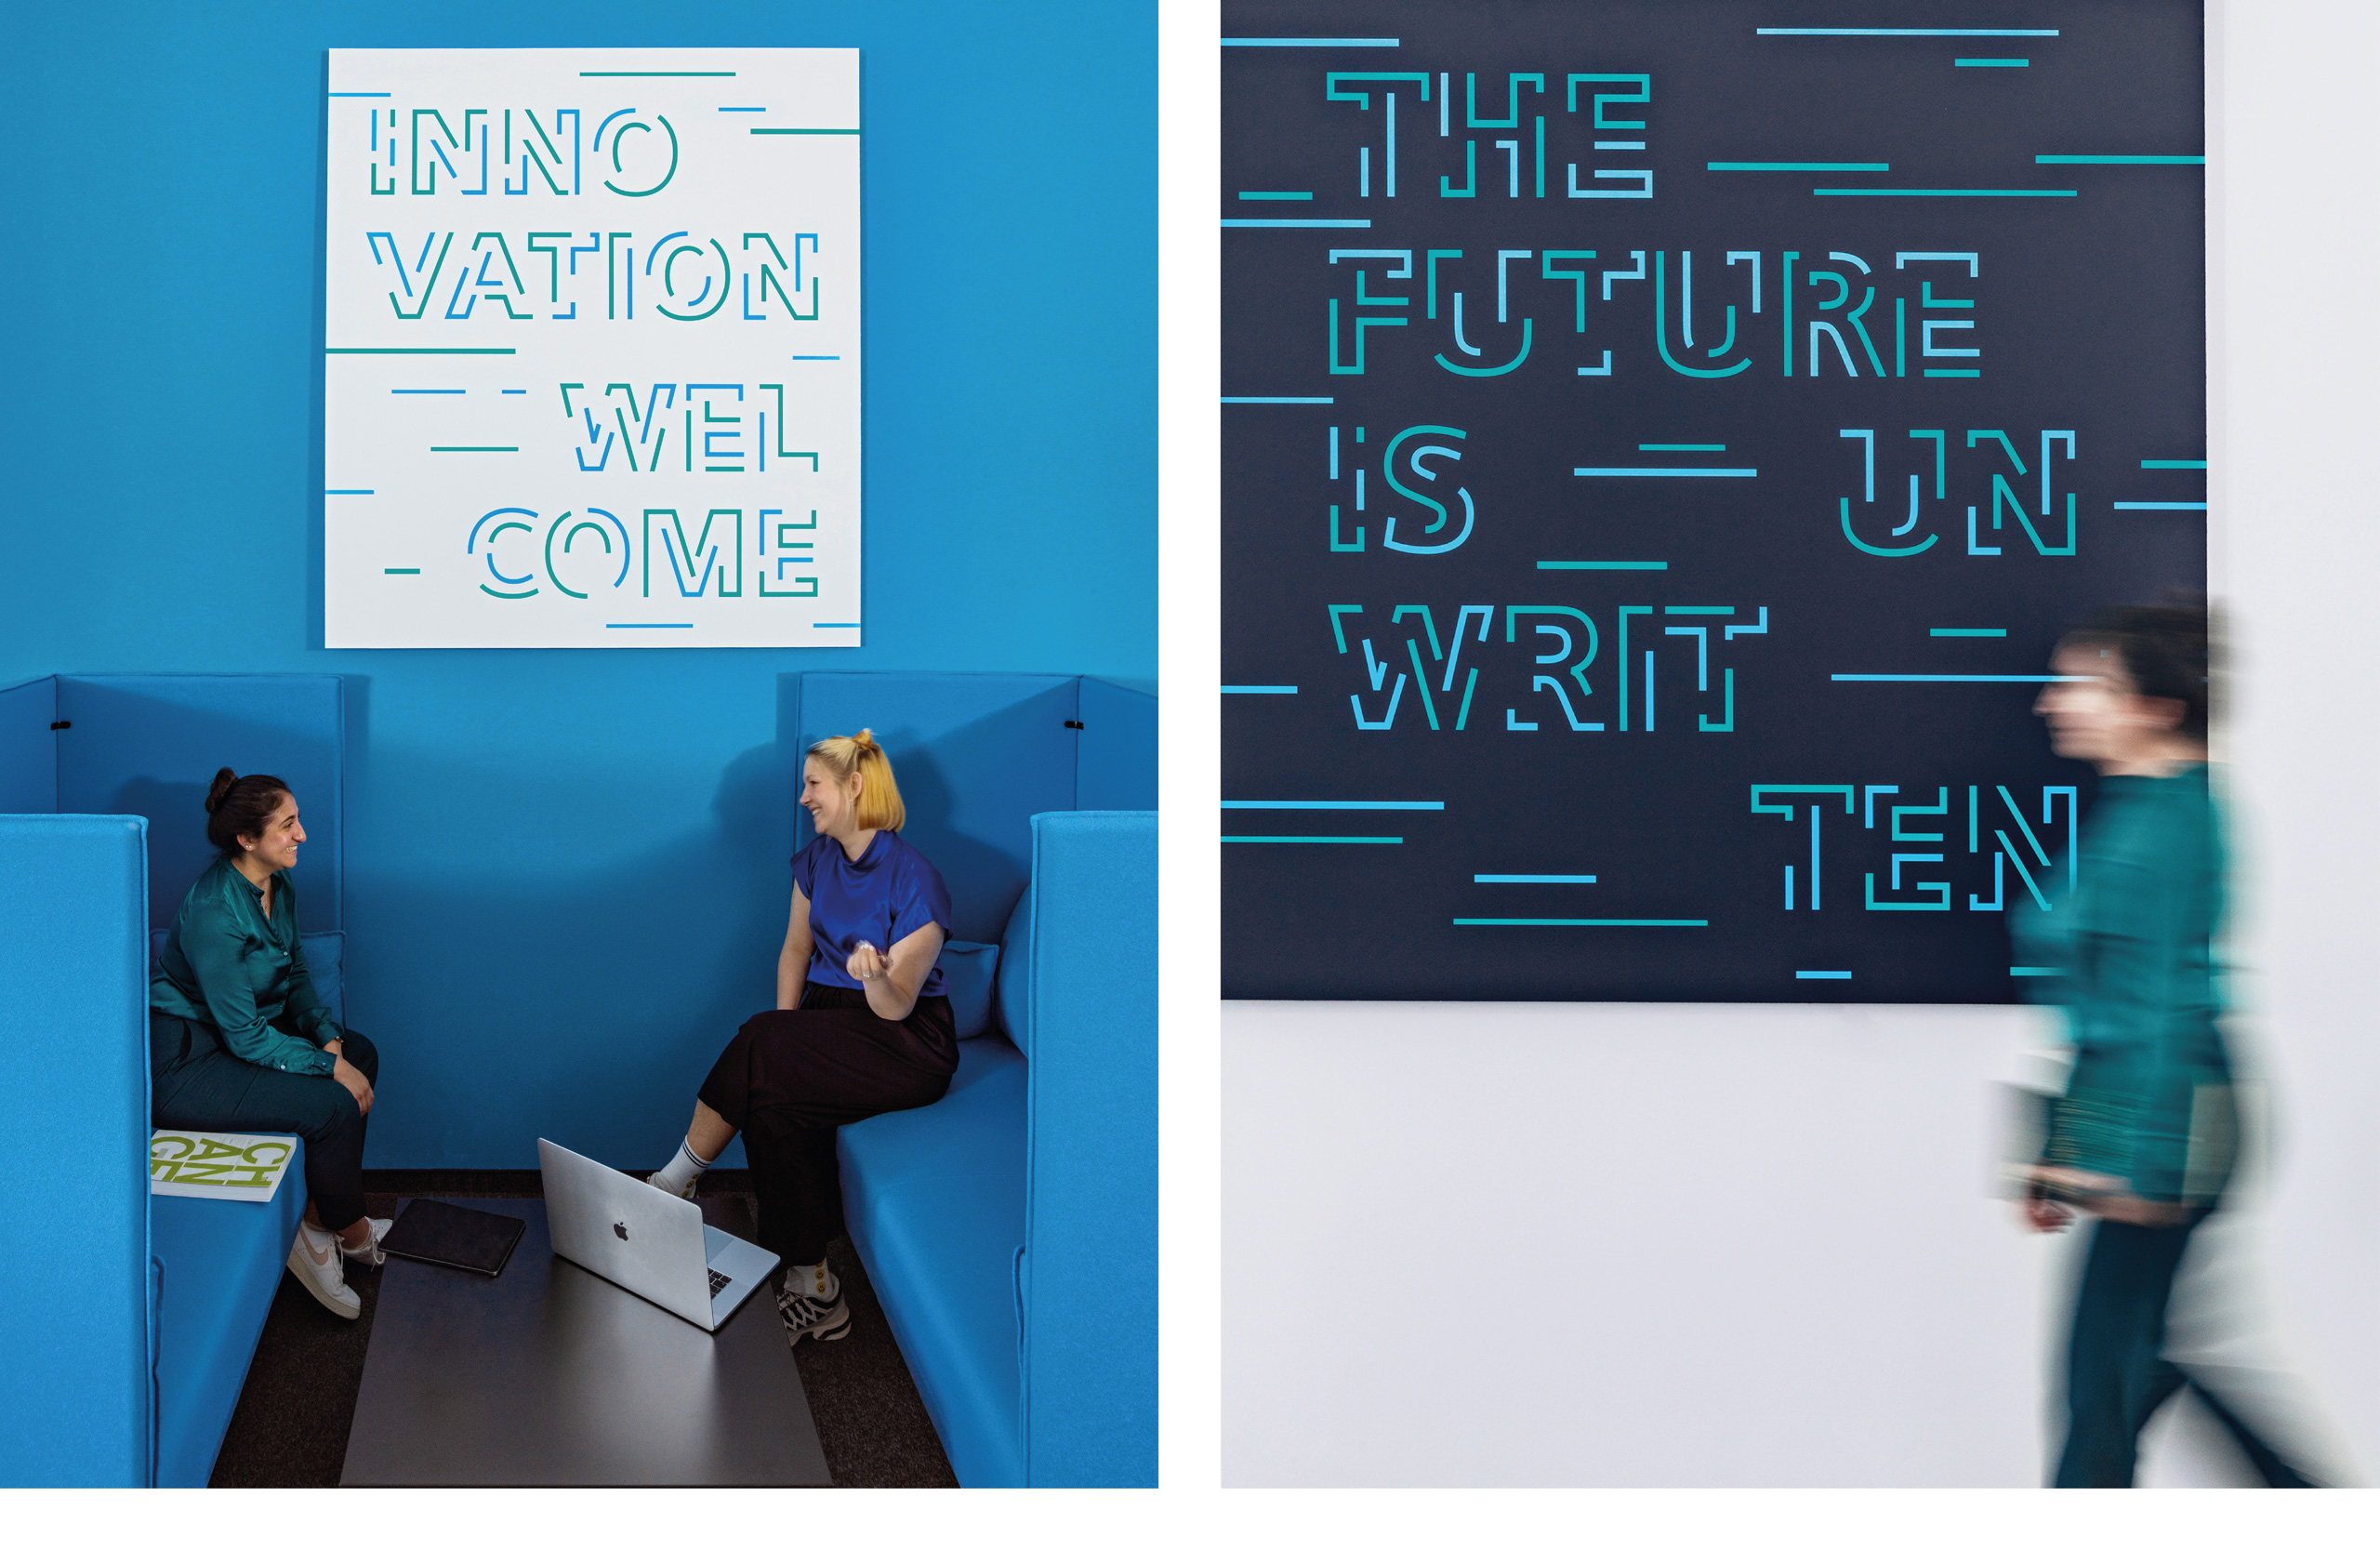 Collage bestehend aus 2 Bildern auf beiden sind blaue und weiße Plakate mit inspirierenden Sprüchen zu sehen, links auf einer blauen Wand, neben zwei Personen und recht auf einer weißen Wand bei der eine Frau vorbei läuft